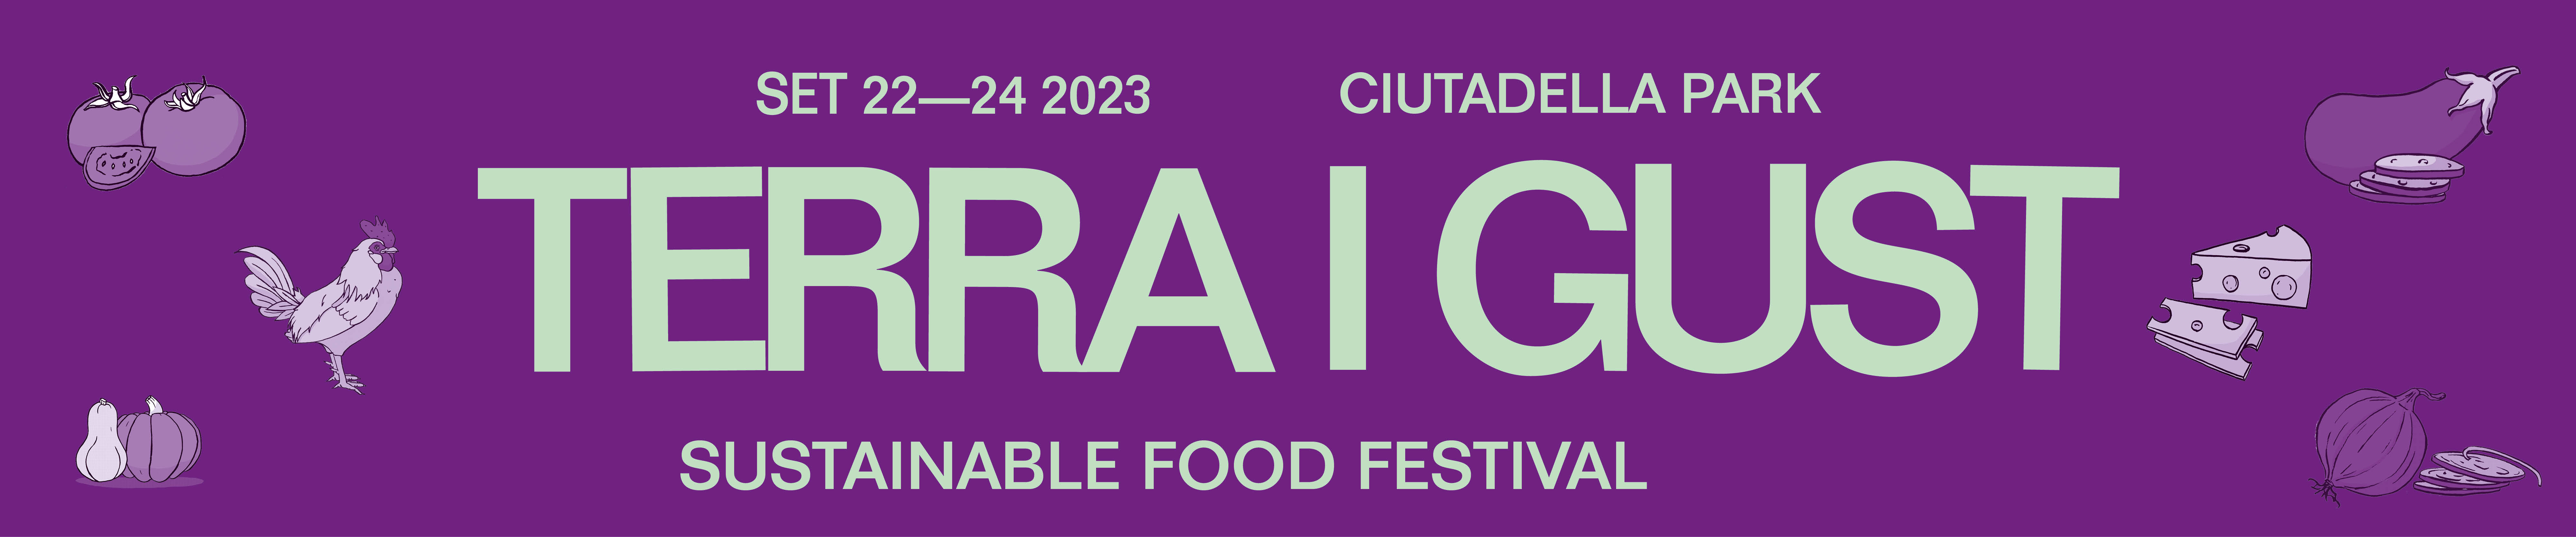 Terra i gust sustainable food festival, 22-24 set Ciutadella park